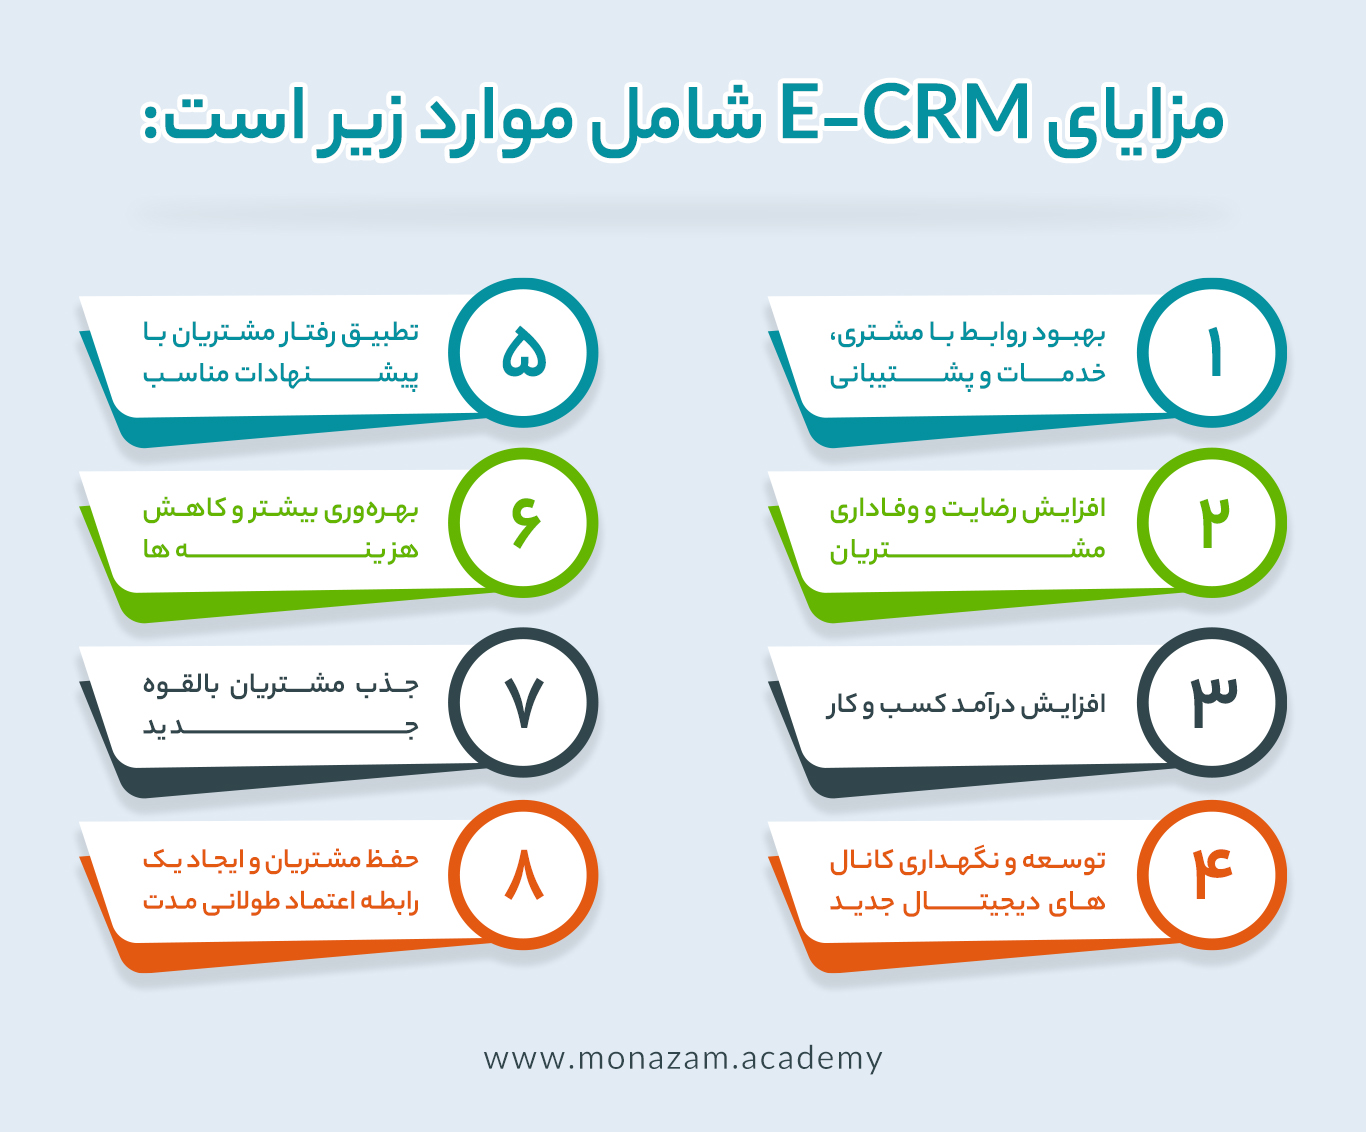 مزایای دوره E-CRM